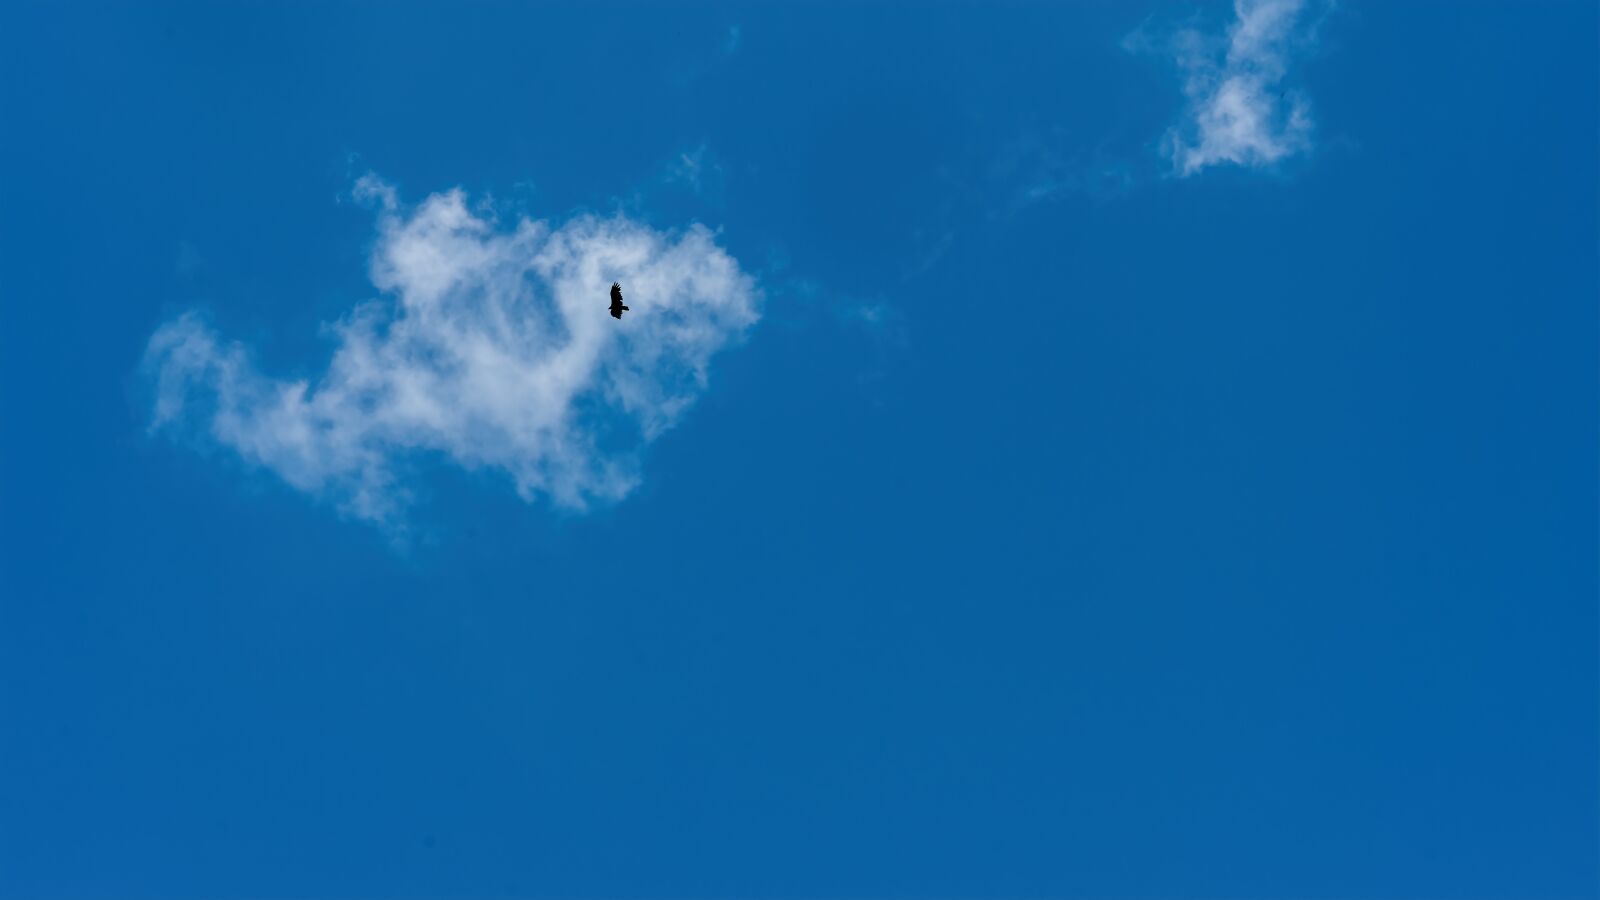 Sony a7R III sample photo. Cloud, bird, sky photography